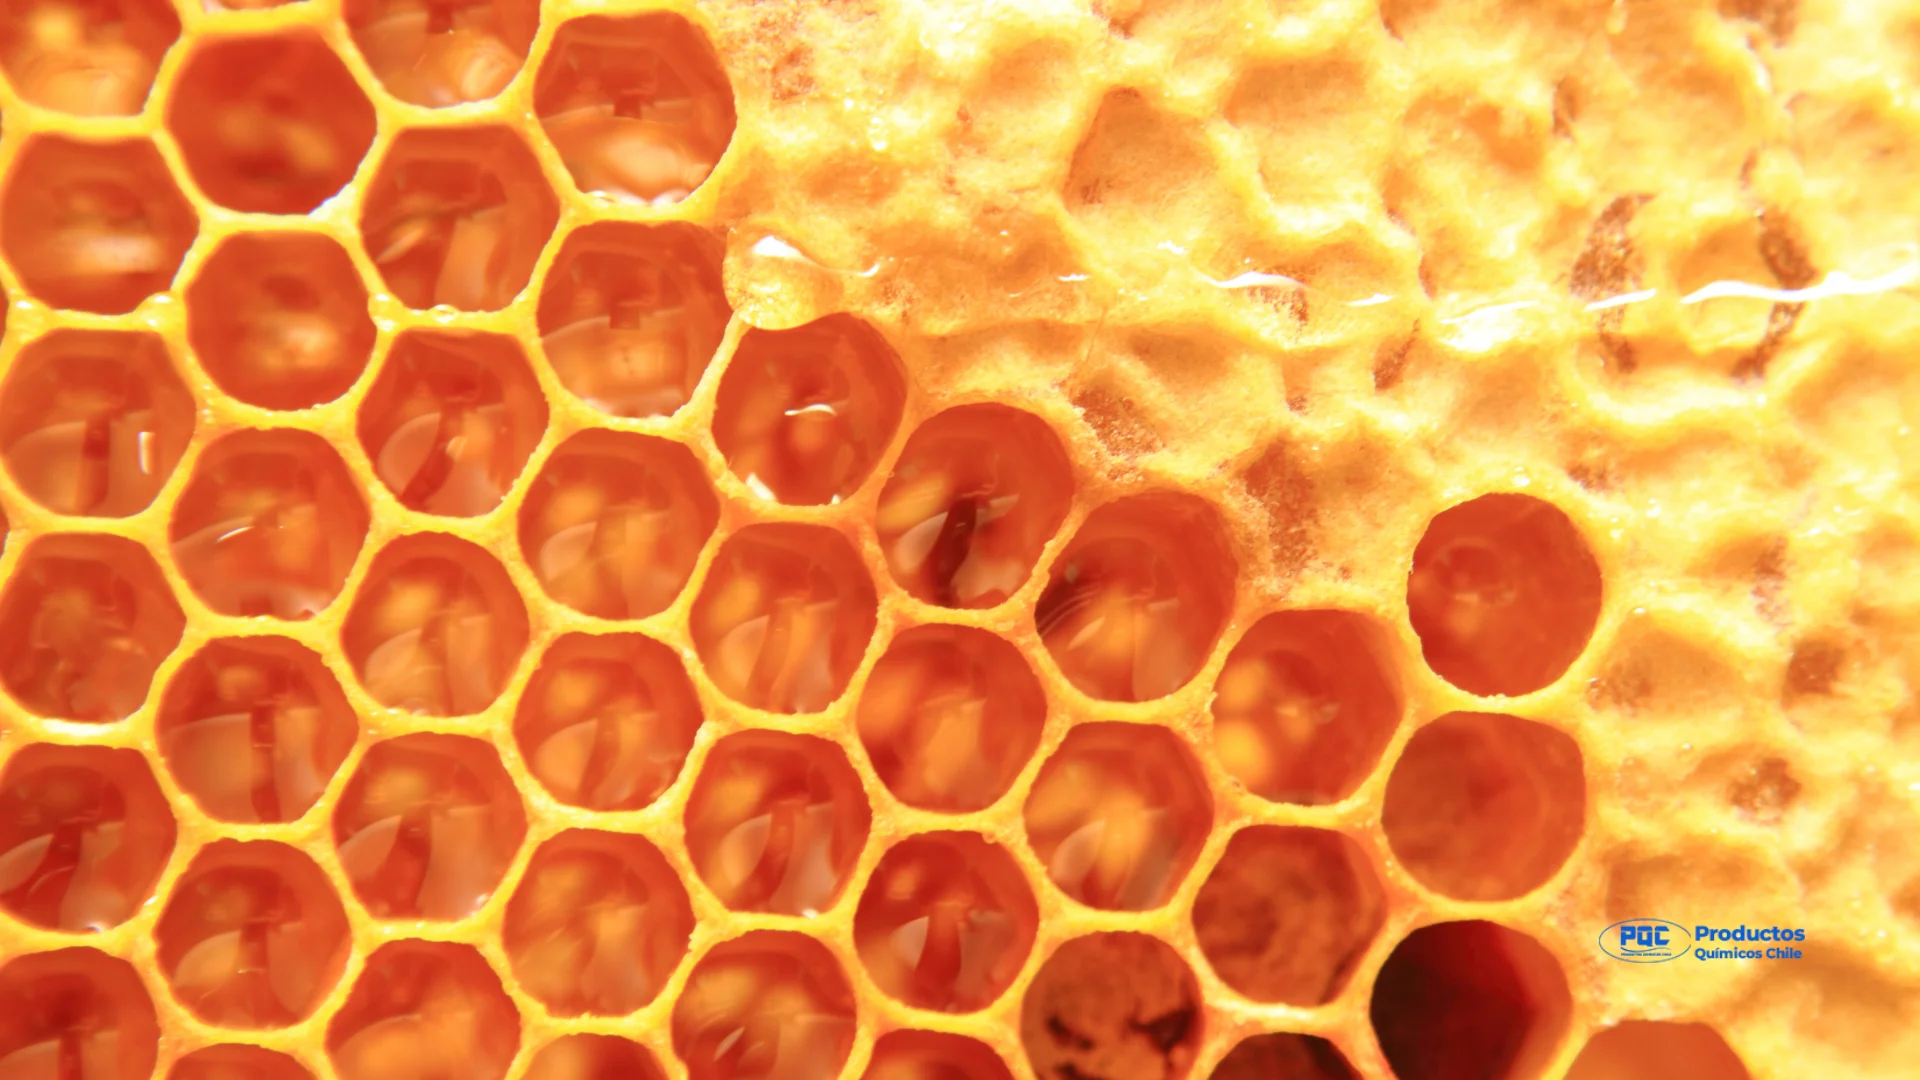 La cera de abejas, un producto natural con múltiples beneficios